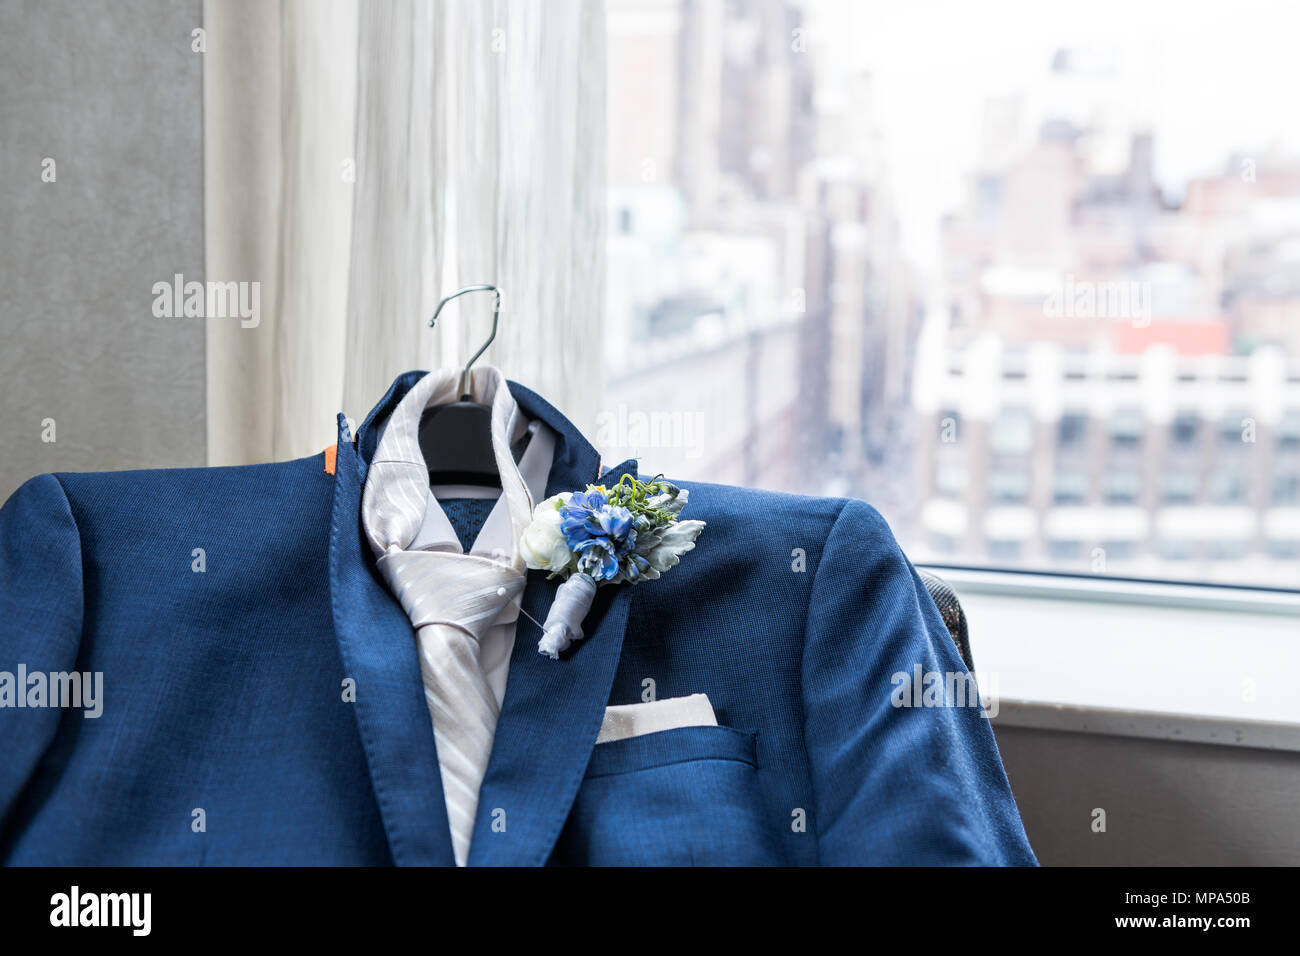 alcanzar brandy Me preparé Los hombres de traje y corbata novio closeup con flor en el ojal,  preparación de boda pin, pañuelo de bolsillo, ventana con vista urbana de  la ciudad de Nueva York NYC Ma